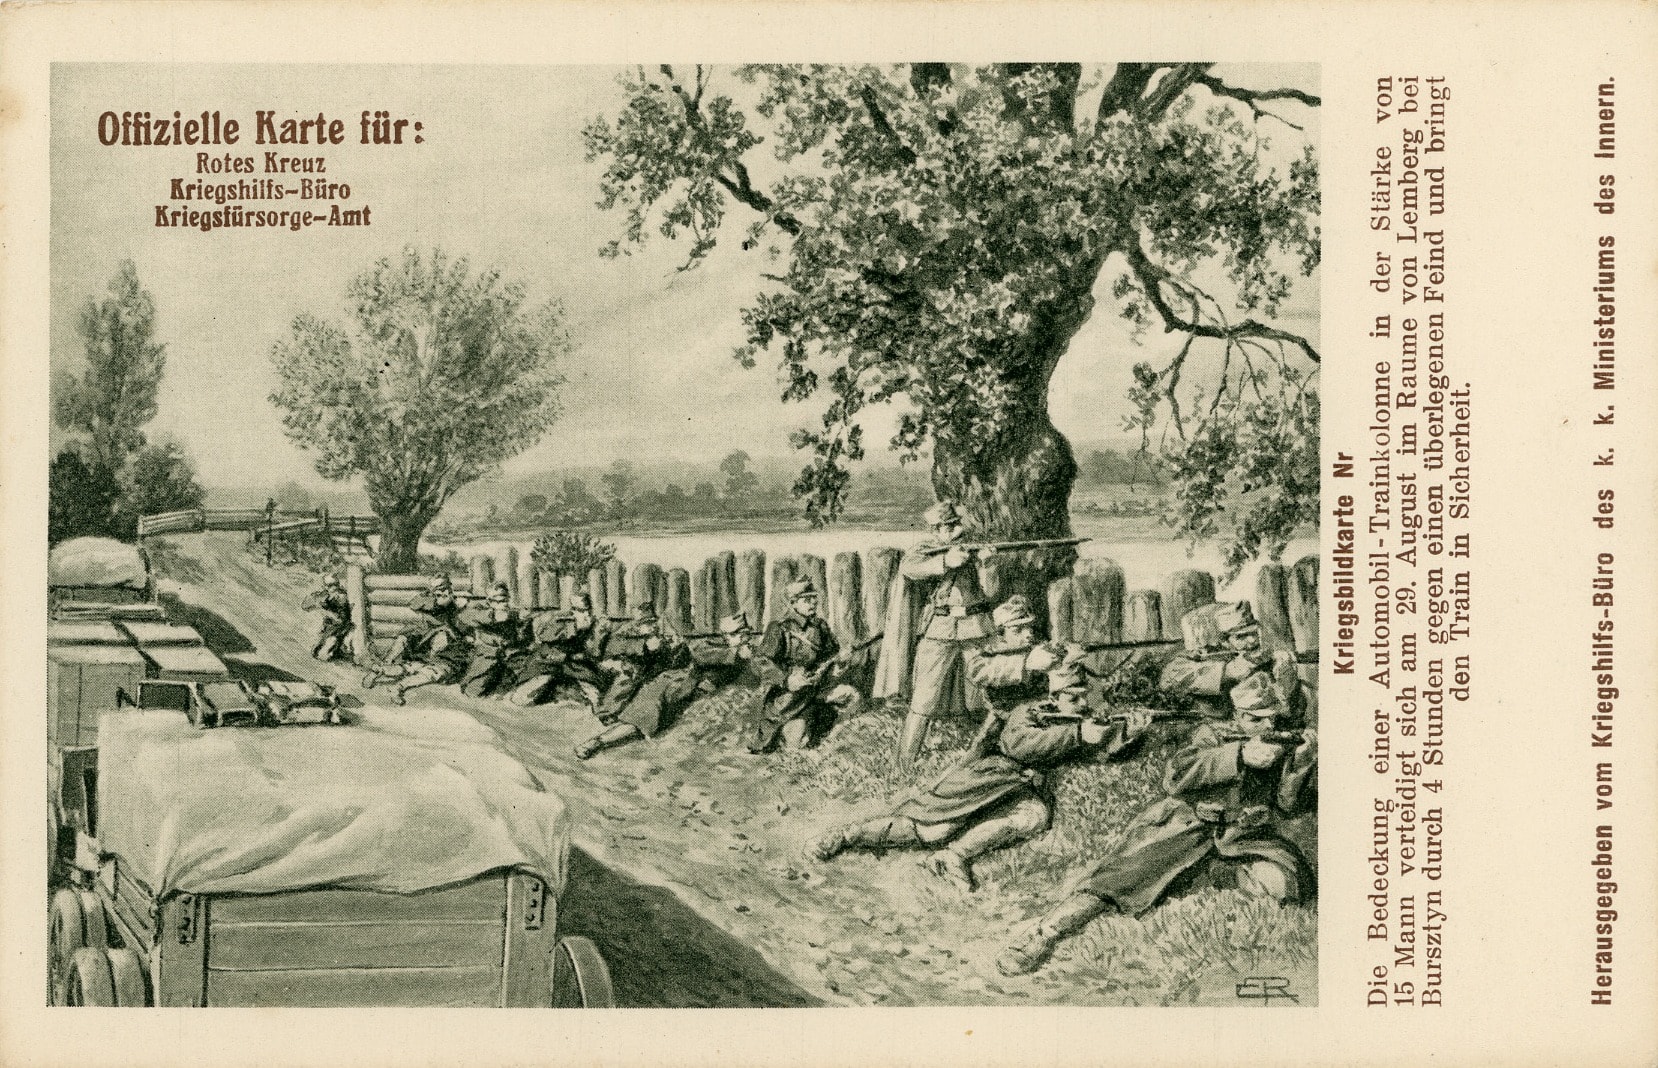 Ratna razglednica u izdanju Crvenog križa, Ureda za ratnu pomoć i Ureda za ratnu skrb Austro-Ugarske Monarhije koja prikazuje obranu položaja skupine vojnika u Ukrajini (HR-HDA-987. Obitelj Pušić-Kraišić)